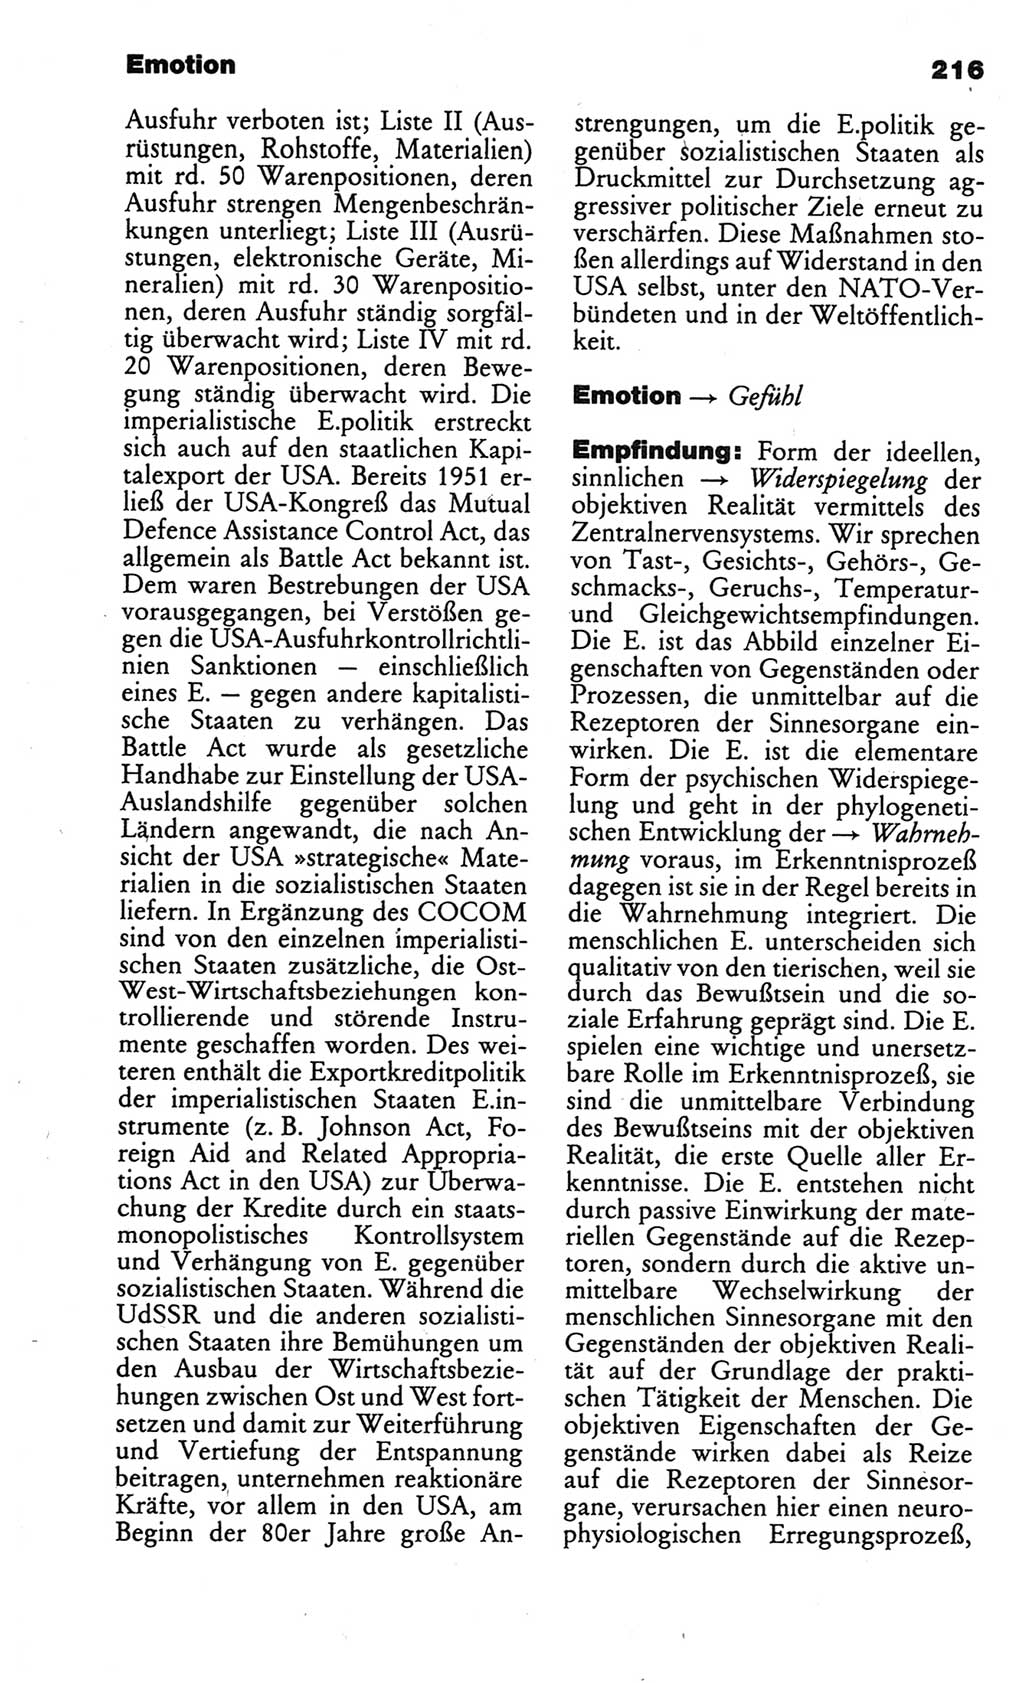 Kleines politisches Wörterbuch [Deutsche Demokratische Republik (DDR)] 1986, Seite 216 (Kl. pol. Wb. DDR 1986, S. 216)